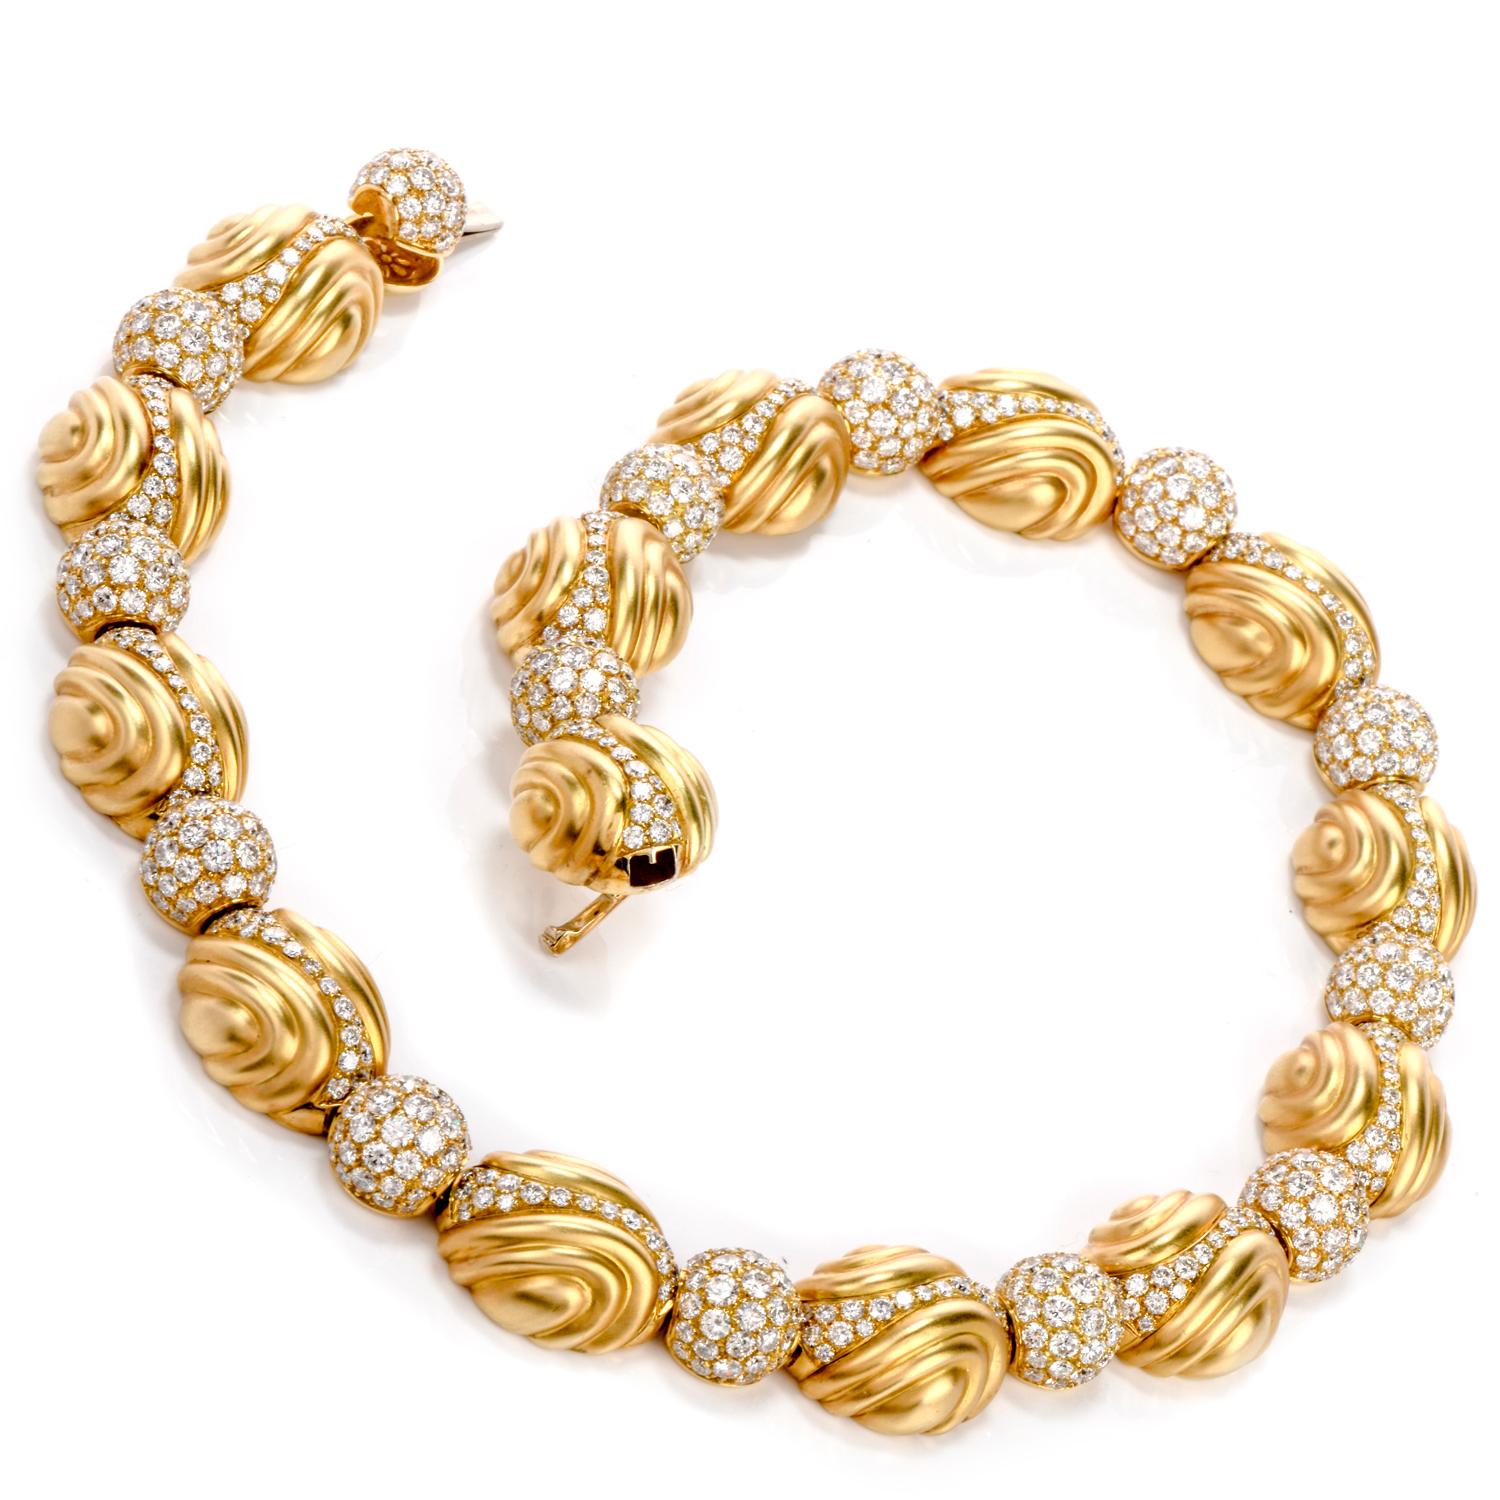 Dieser Ambrosi  Designer-Halskette wurde von einem orbitalen und elliptischen

Motiv und aus feinem 18-karätigem Gelbgold gefertigt.

14 einzelne Glieder sind zu elliptischen und phantasievollen Formen geformt

während 14 kugelförmige Diamantkugeln